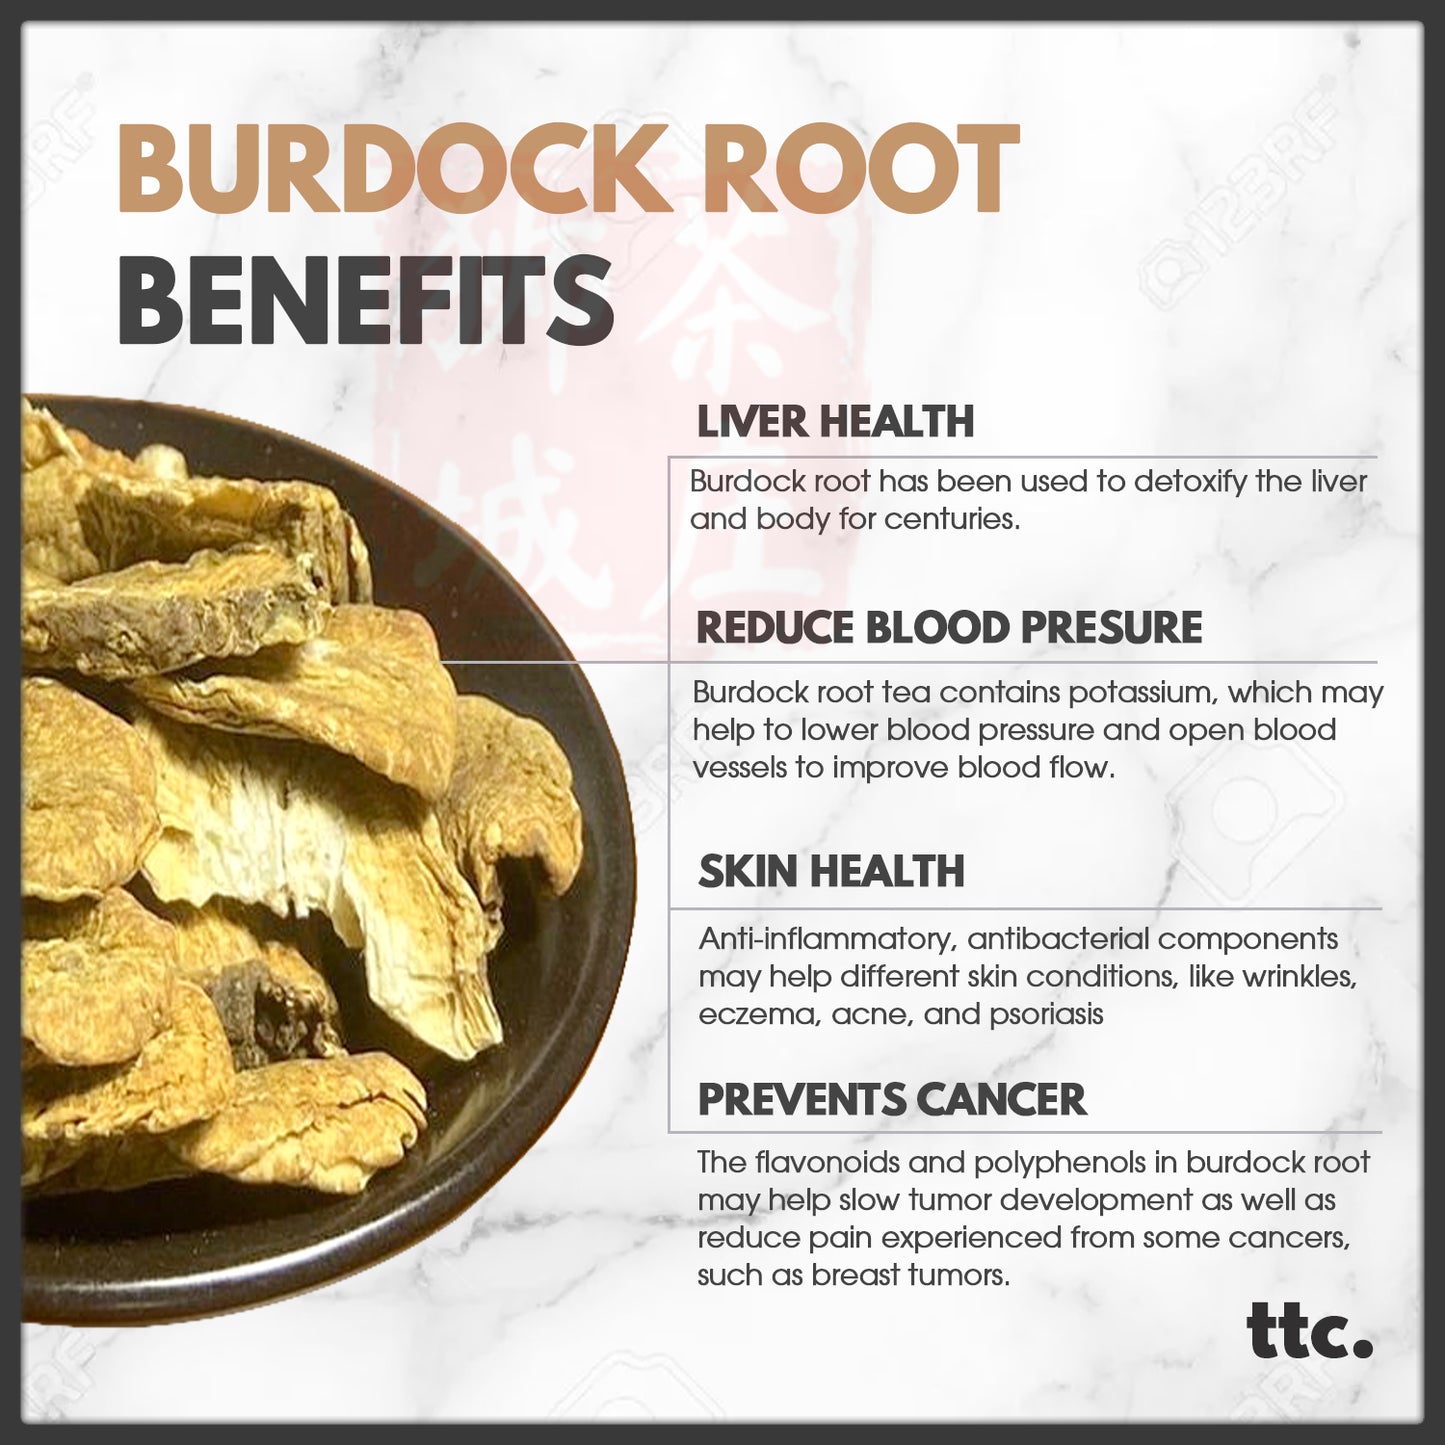 Burdock Root Tea (100g)